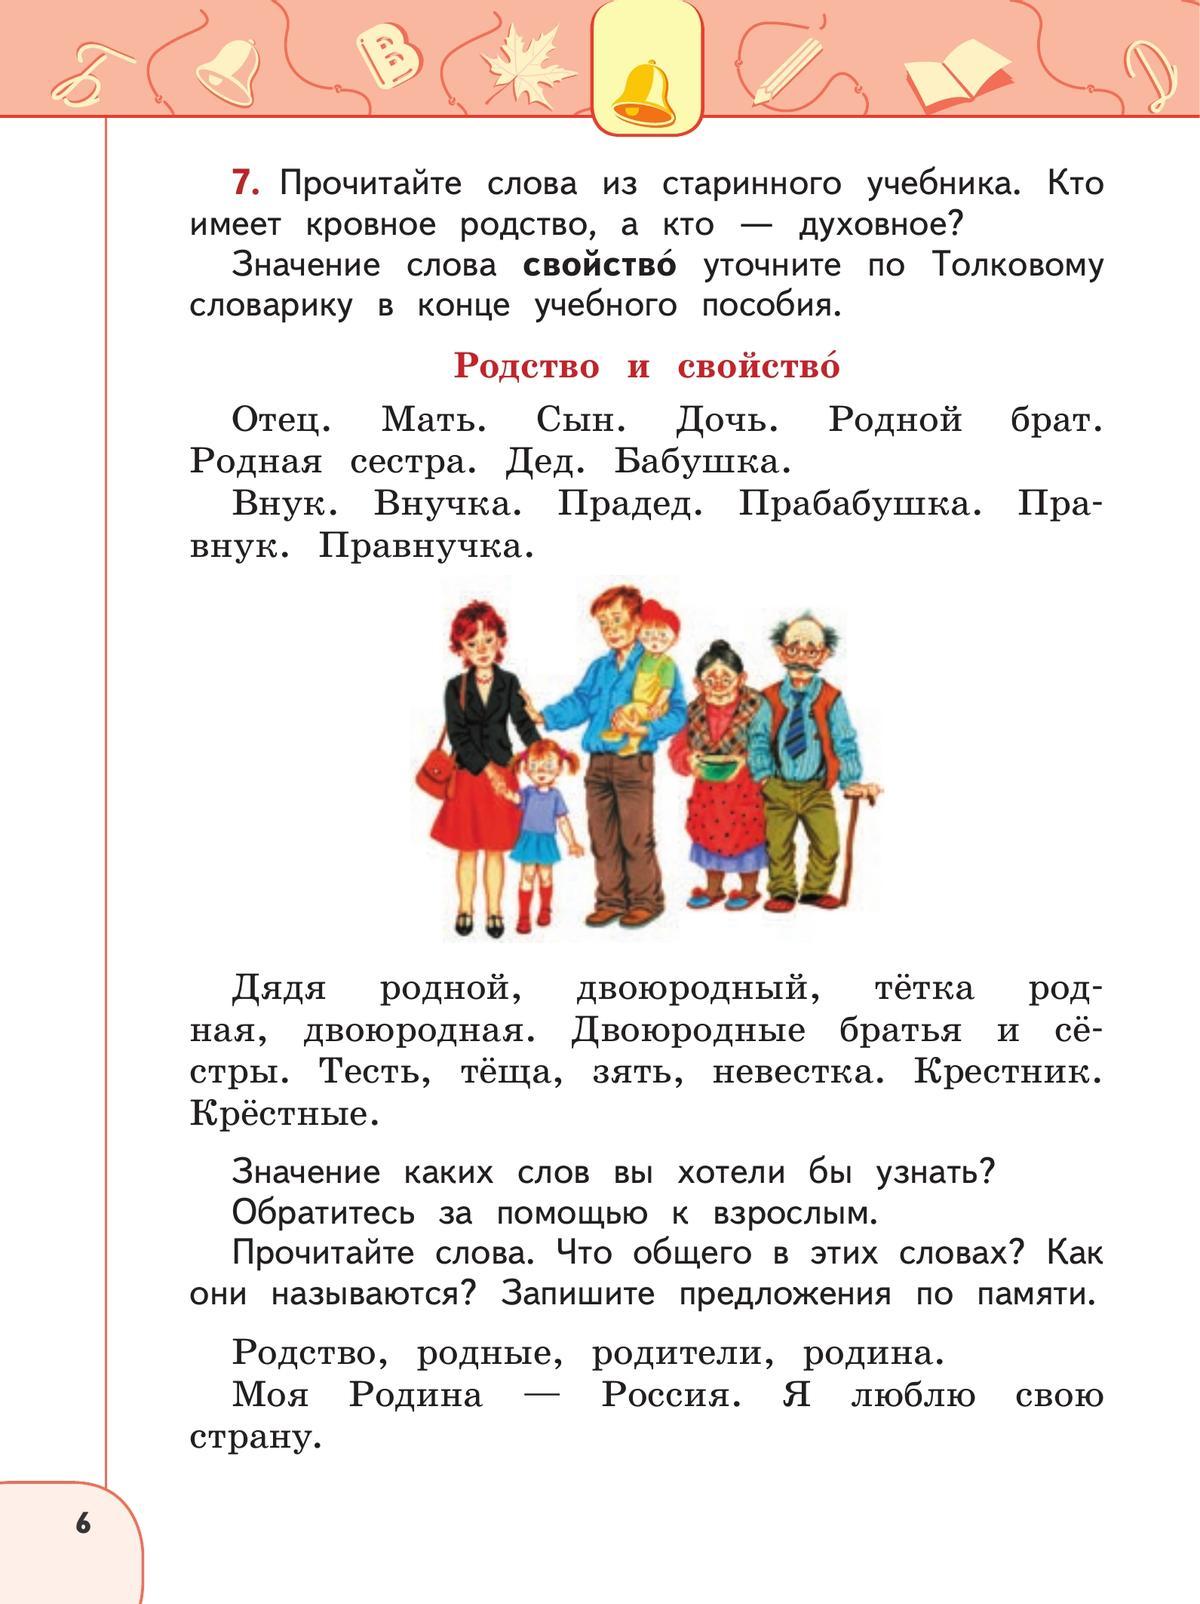 Русский язык. 2 класс. В 2 ч. Часть 2. Учебное пособие 8